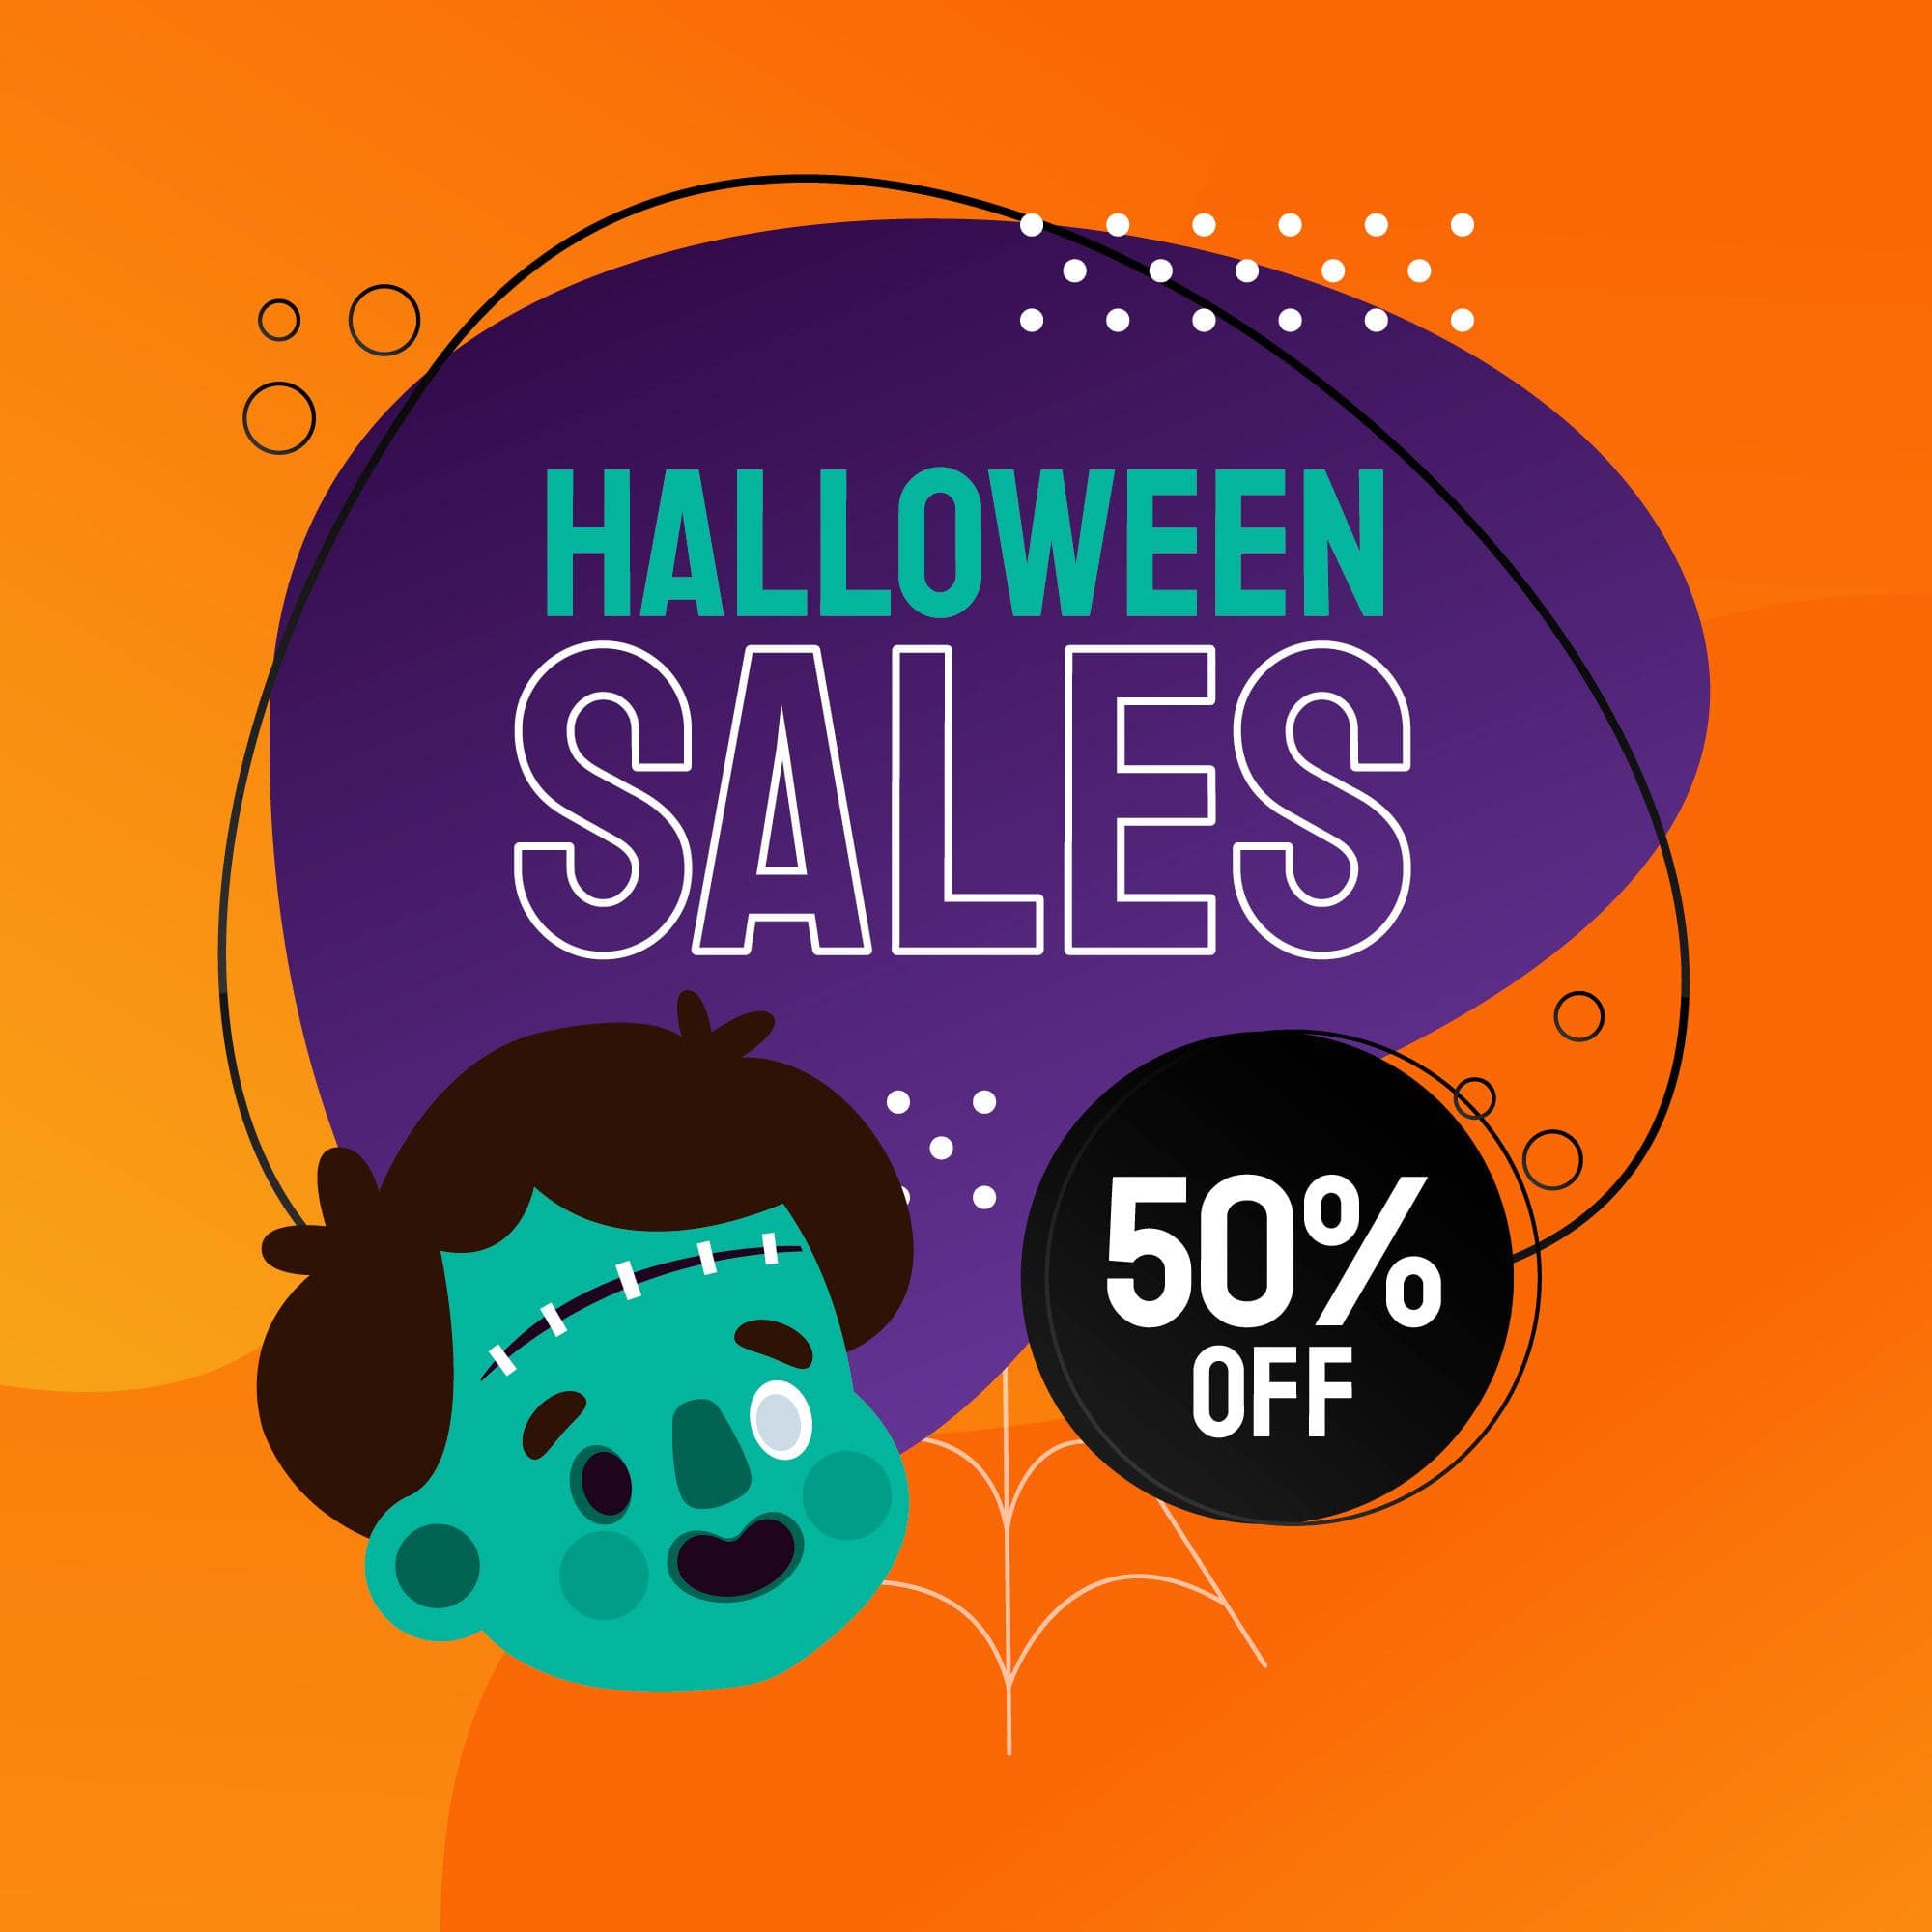 “Best Spooky costume deals”